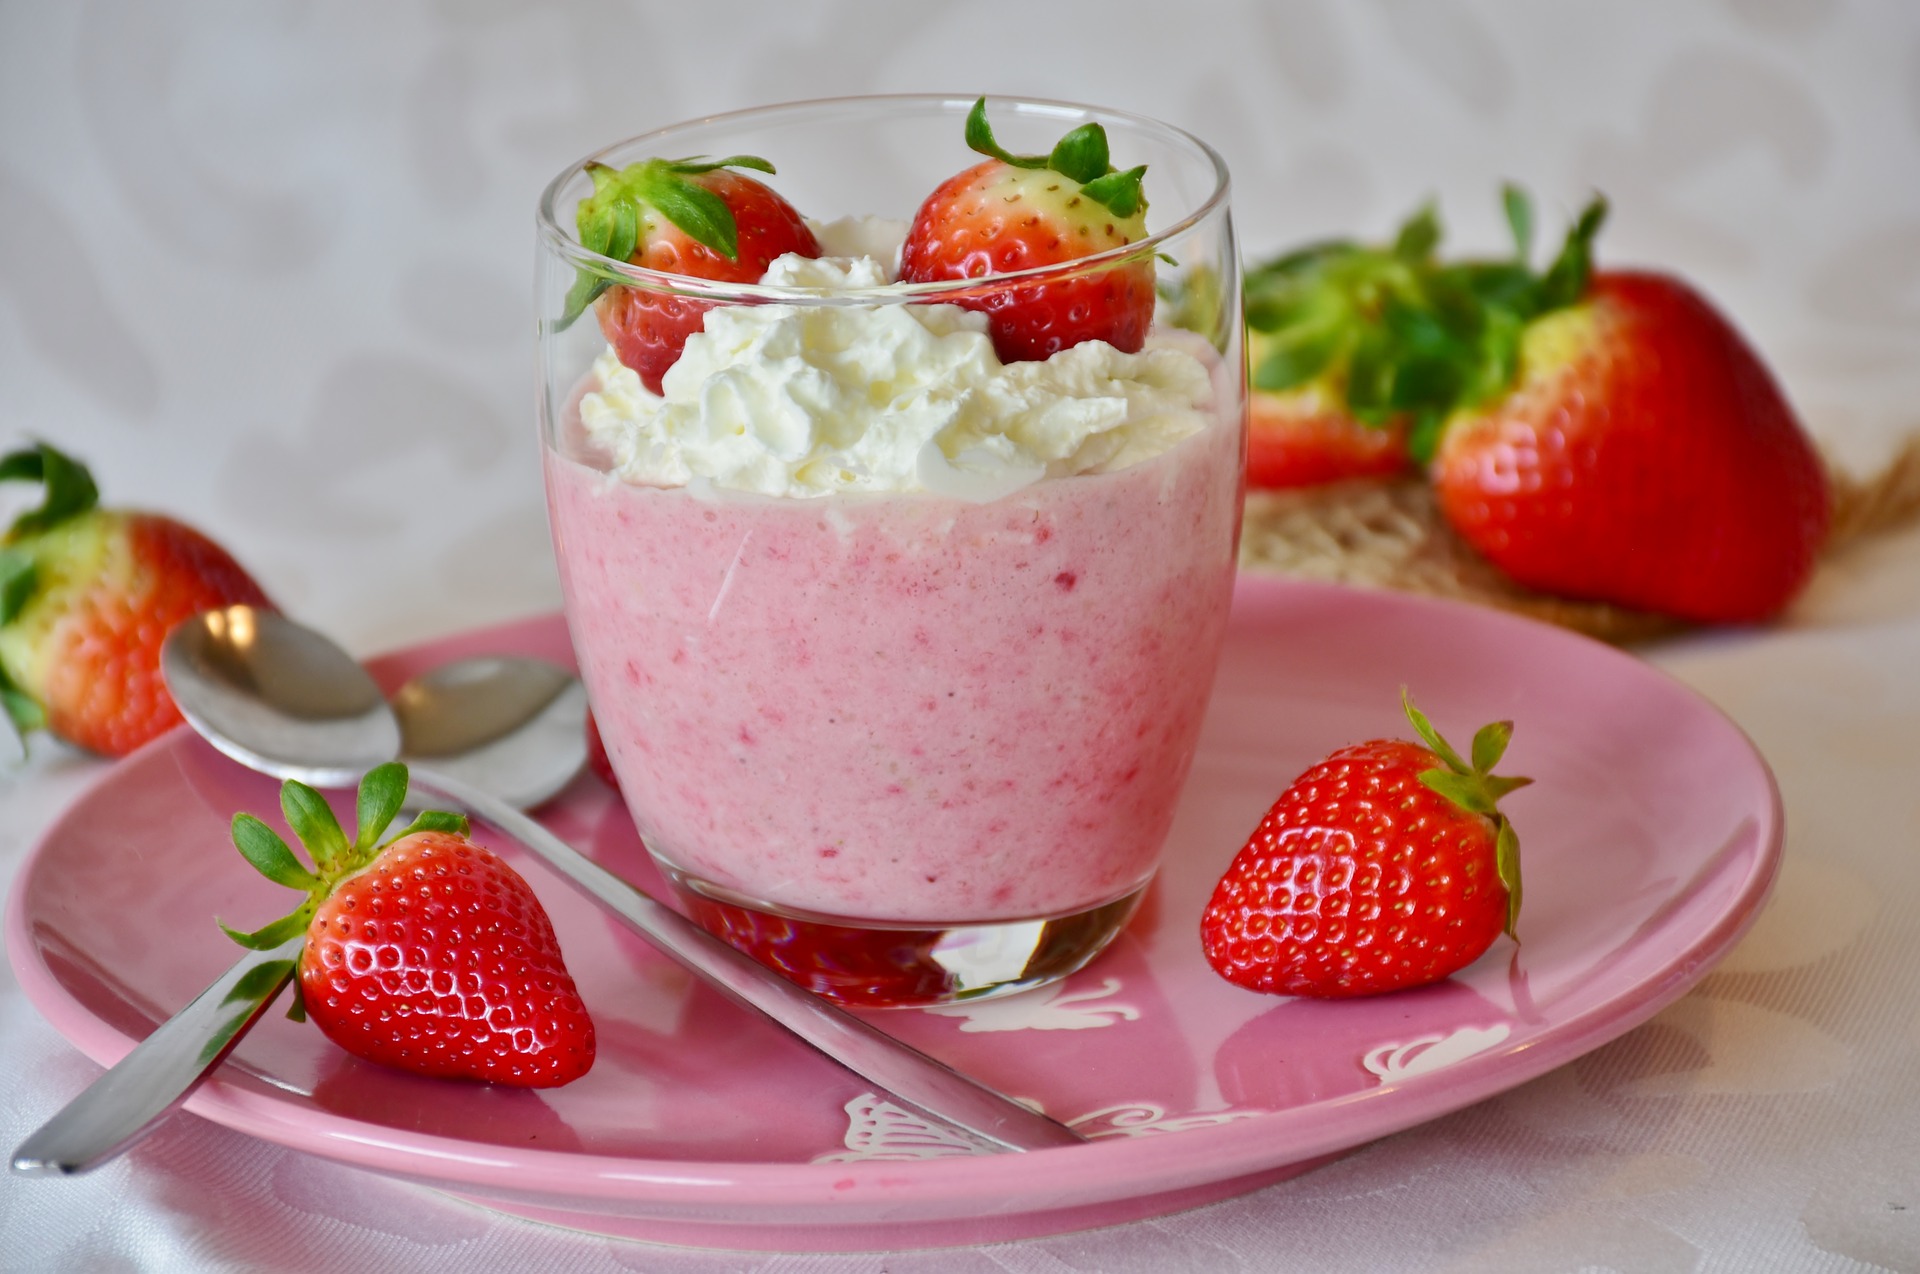 Recette Mousse de fraise en verrine - recette desserts et gateaux ...